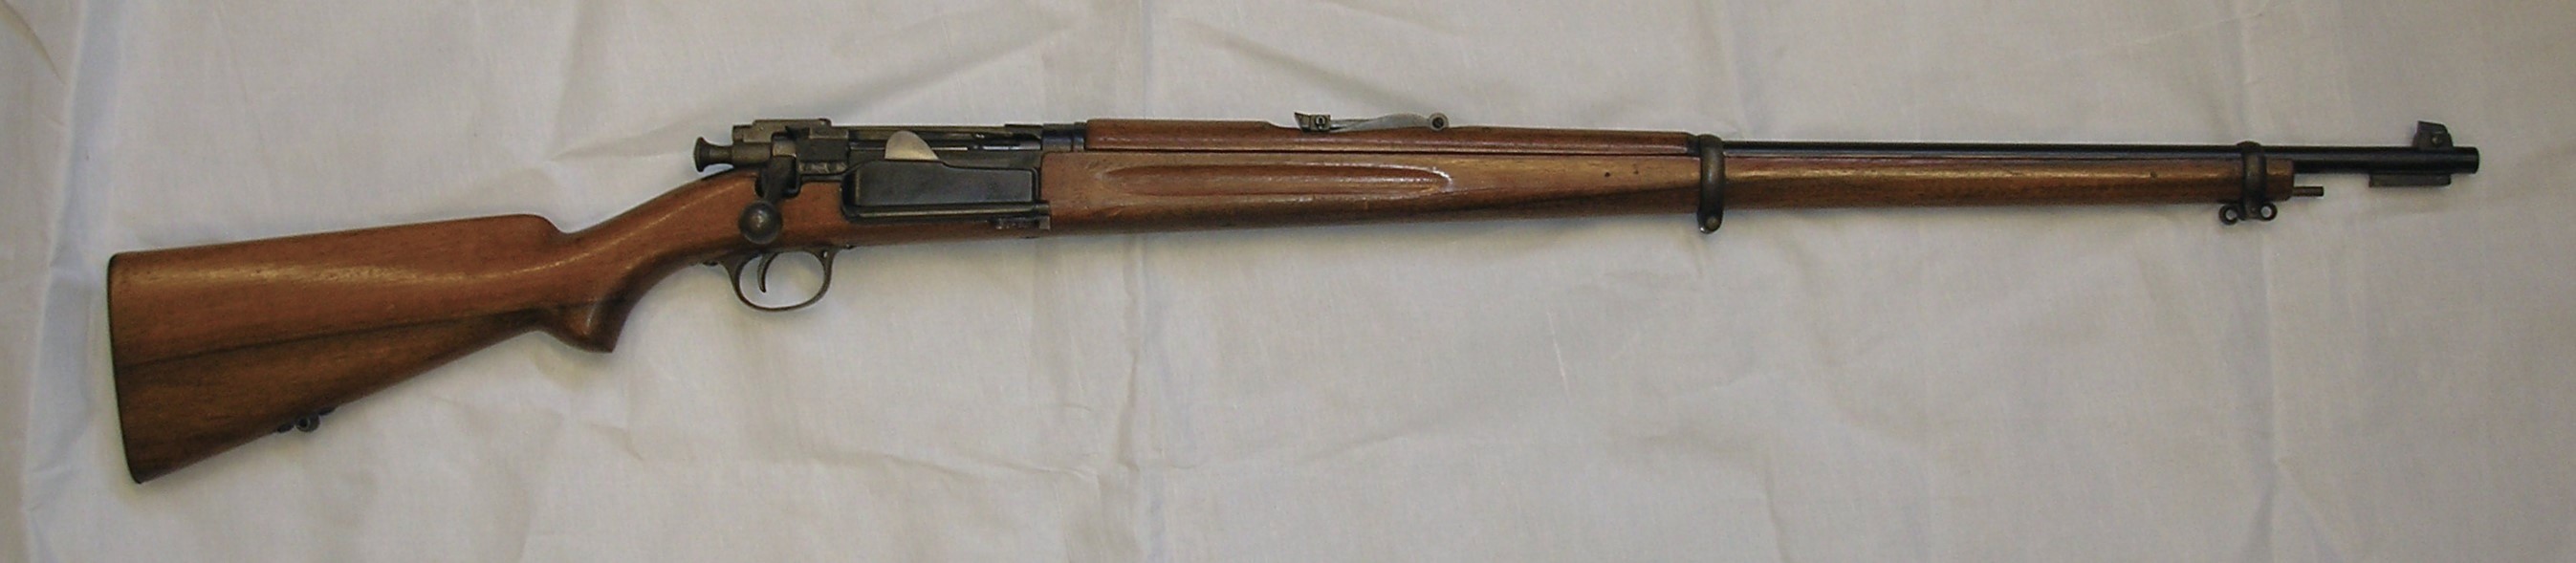 ./guns/rifle/bilder/Rifle-Kongsberg-Krag-M1894-1898-privat-325-1.JPG